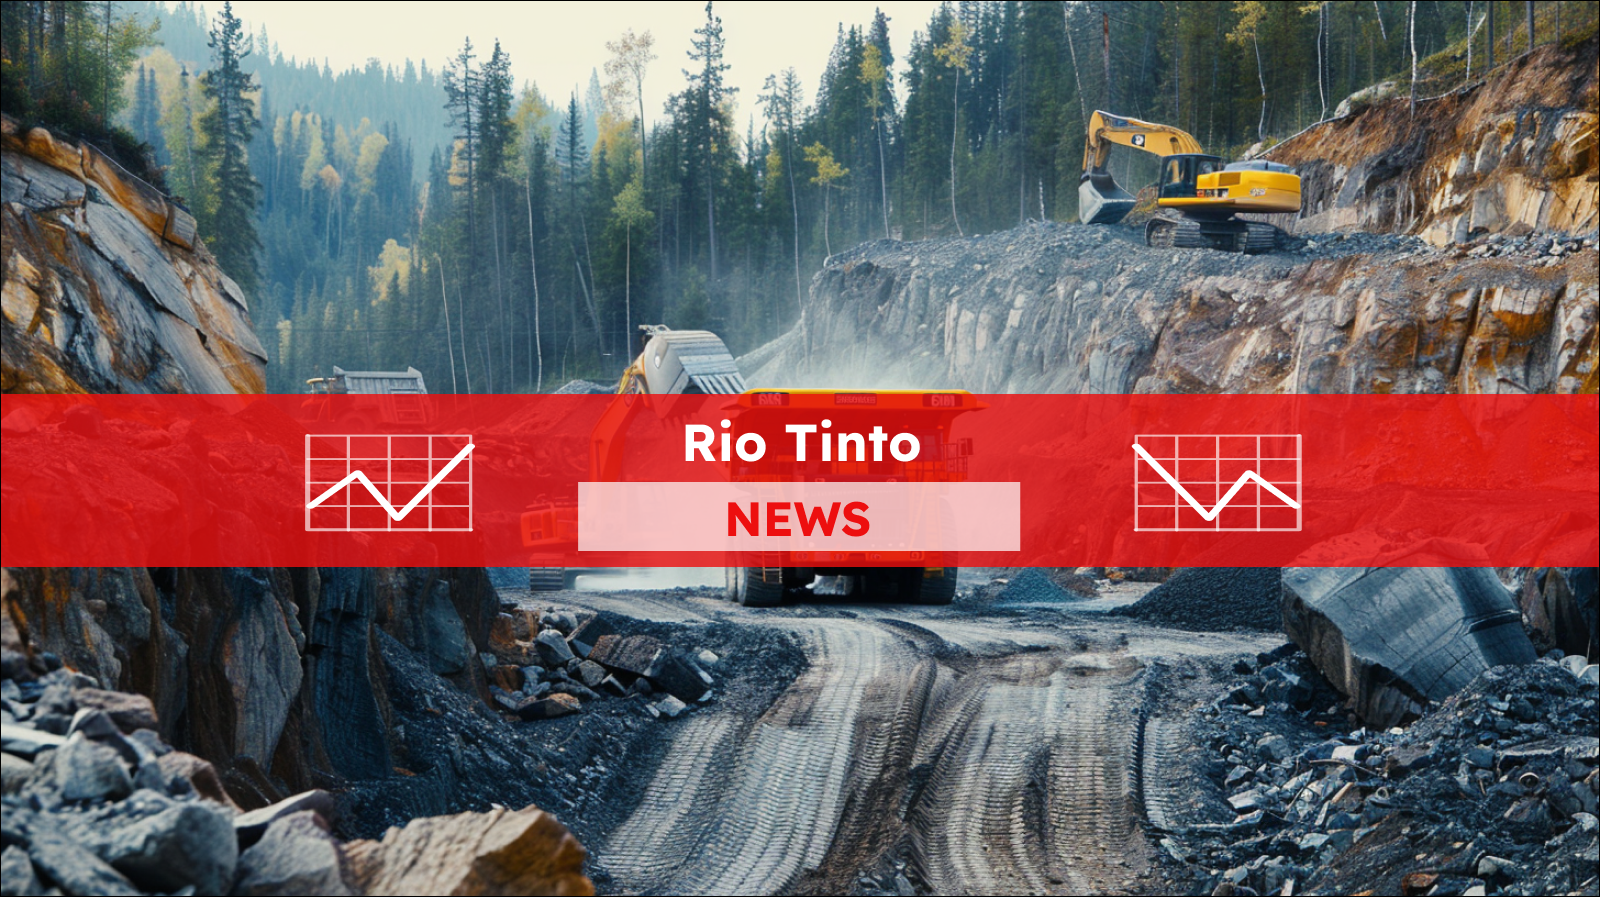 Große Baumaschinen arbeiten in einem Tagebau mit Wald und Bergen im Hintergrund, mit einem Rio Tinto NEWS Banner